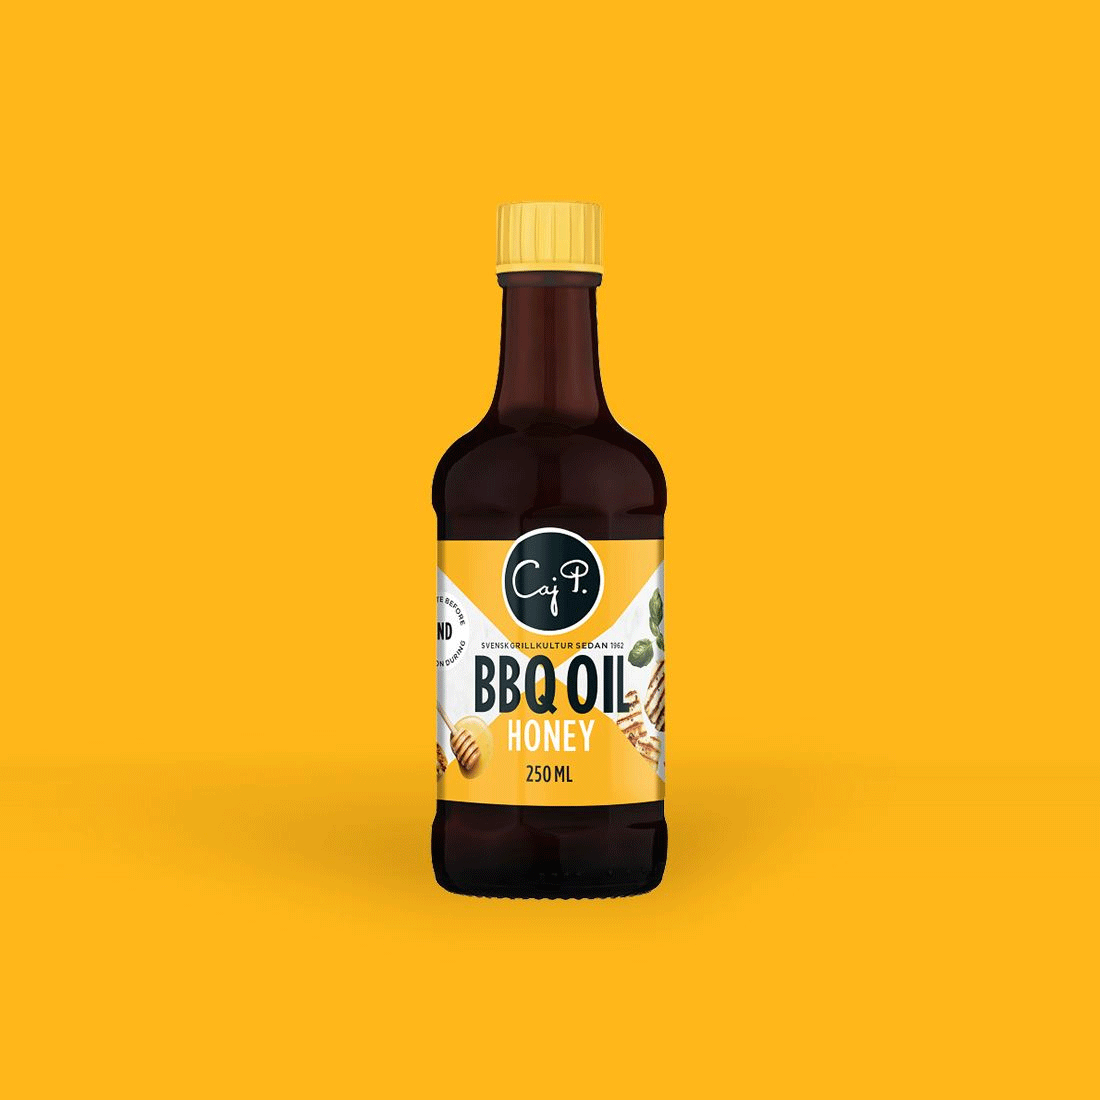 Caj P. BBQ Oil Honey - 250 ml